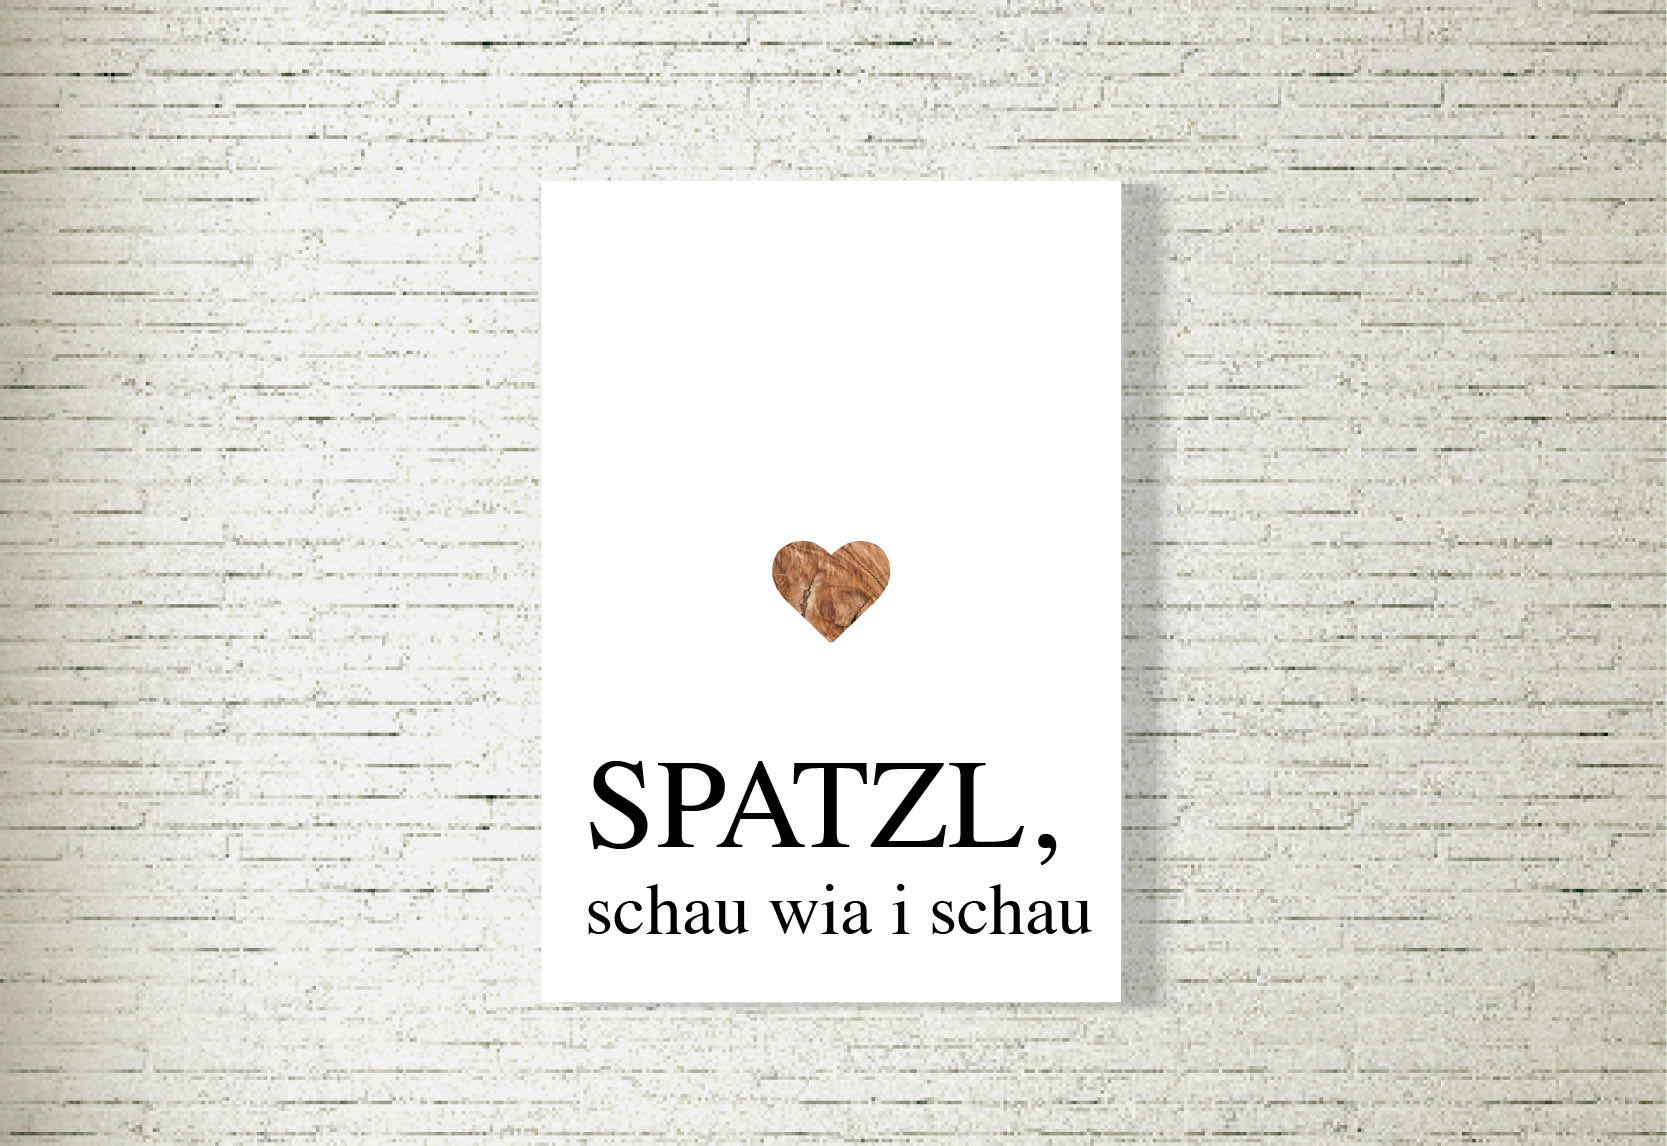 kartlerei poster shop bilder drucken bayrischer spruch bayrisch23 - Poster & Bilder